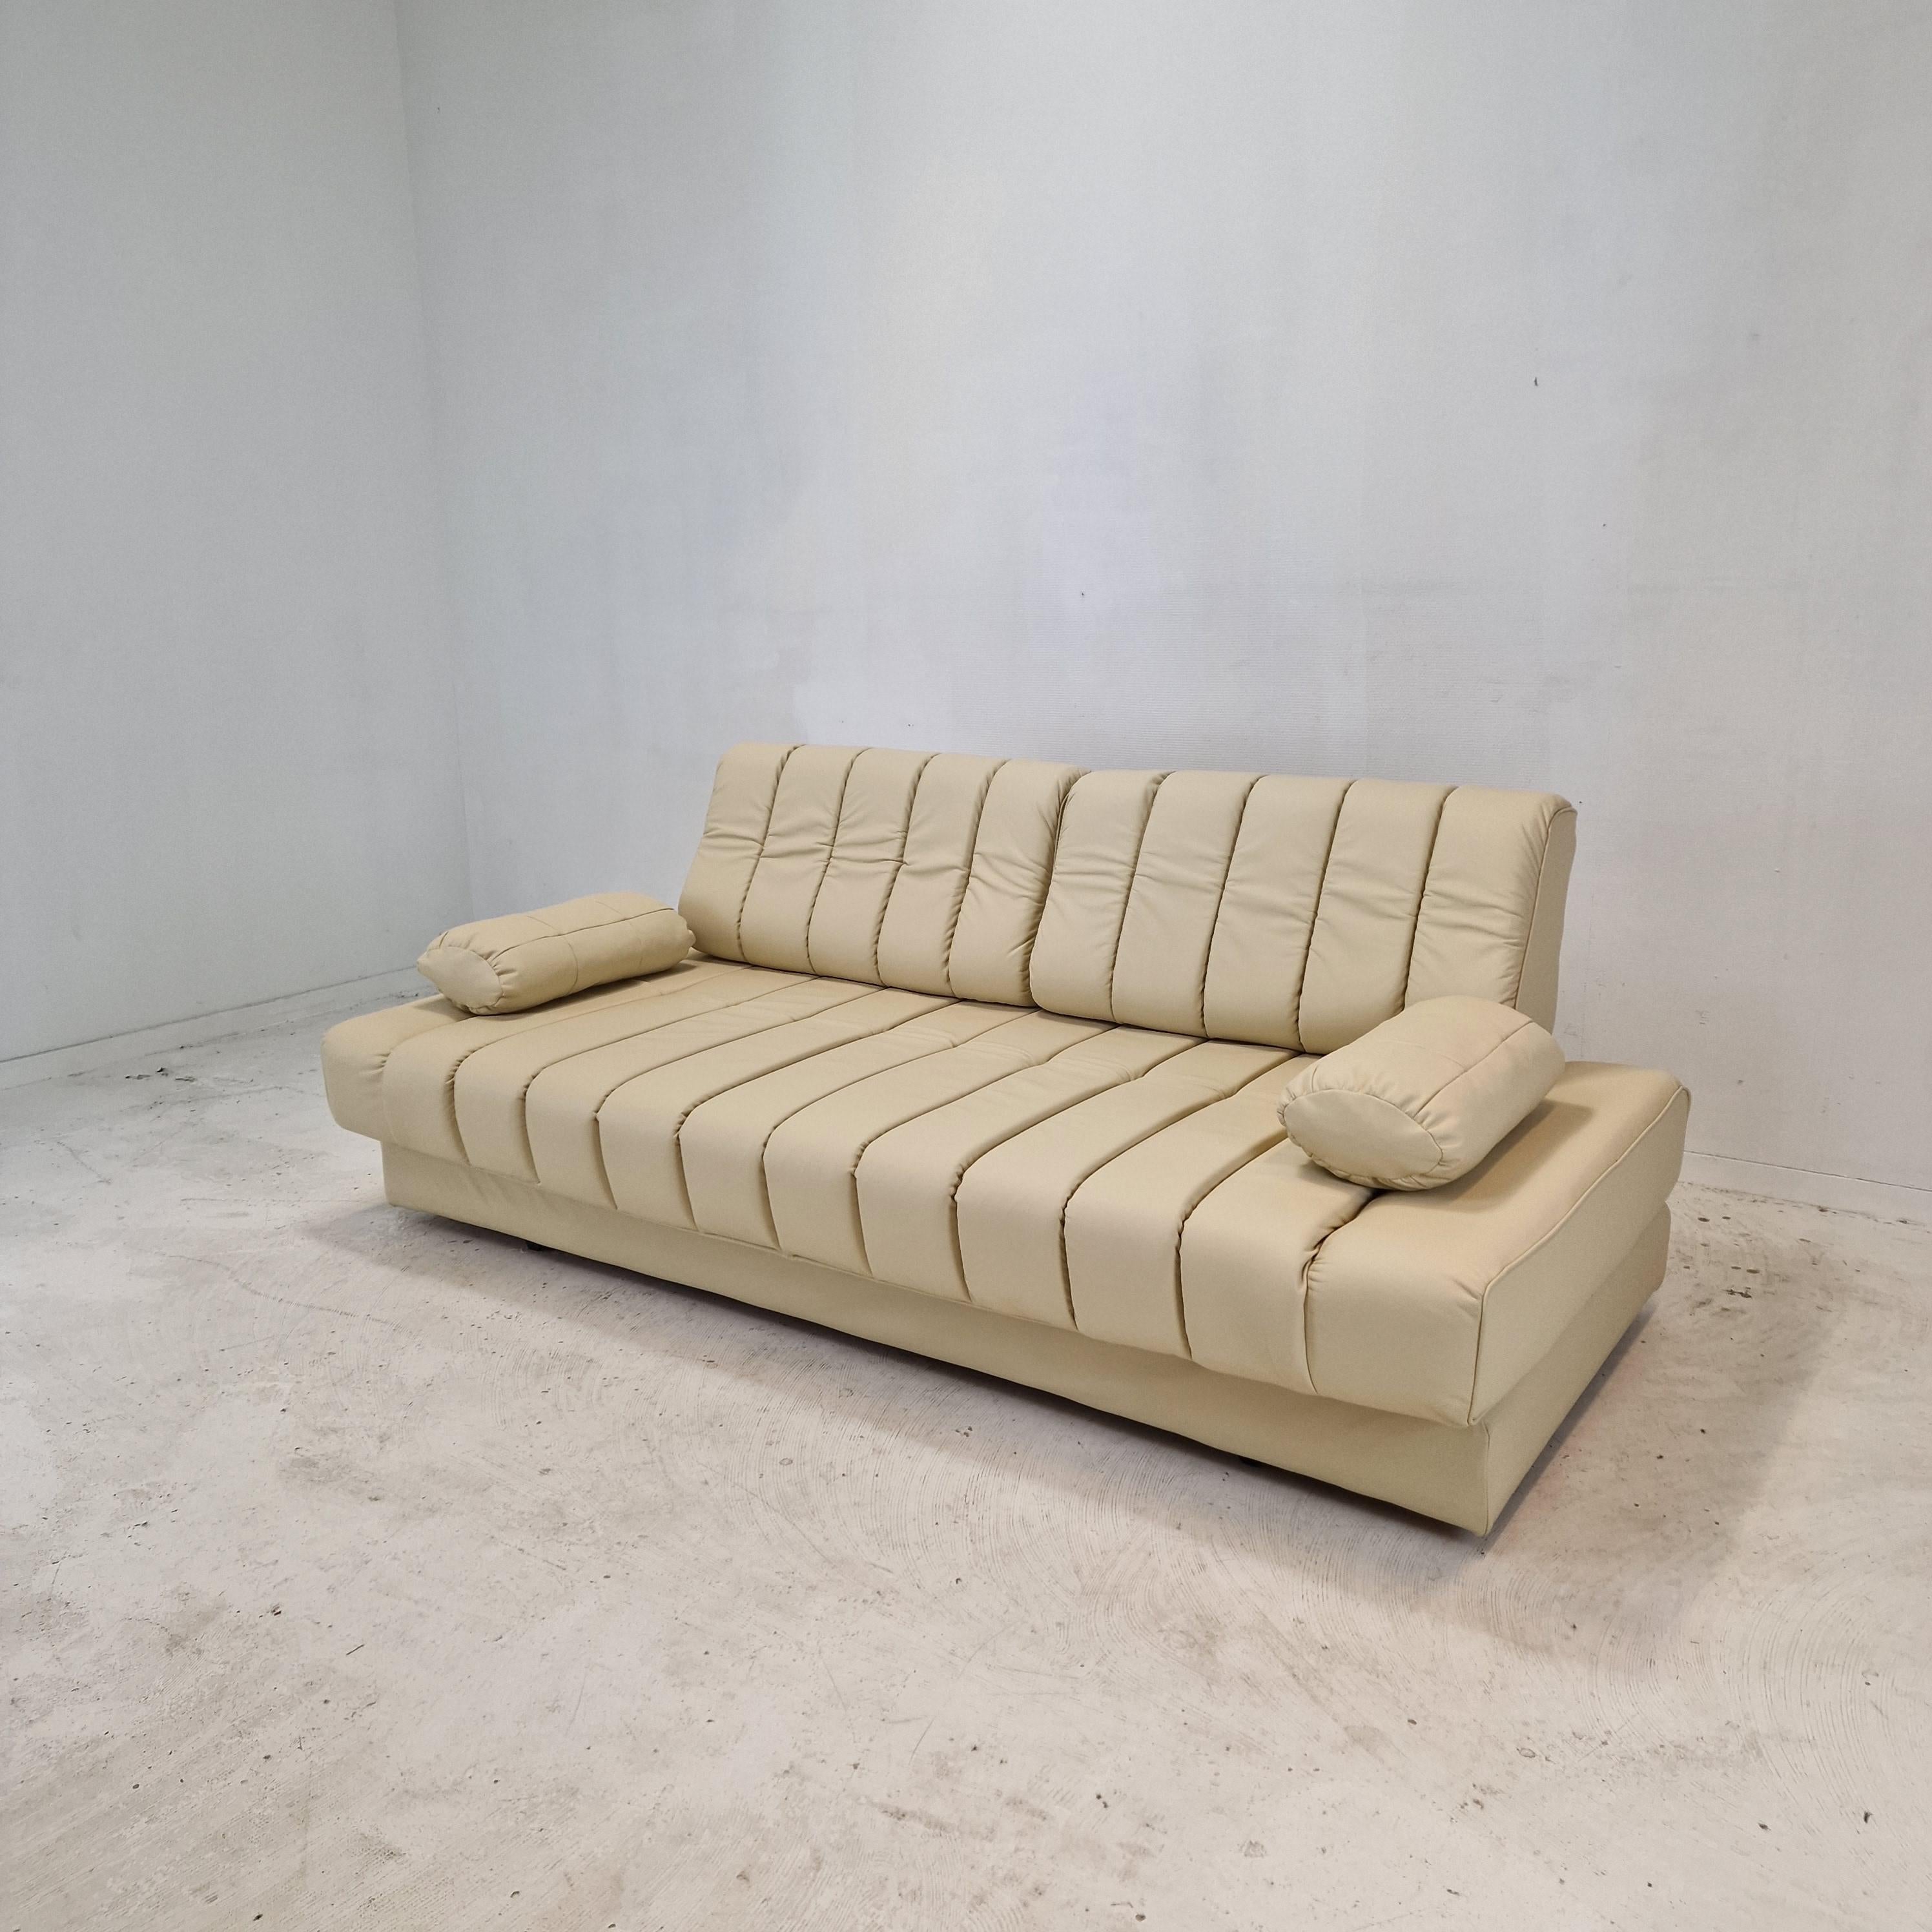 Incroyable canapé ou lit de jour DS-85 en cuir blanc (crème). 
Ce lit de jour DS 85 a été conçu et fabriqué dans les années 1970 par De Sede en Suisse. 

Ce canapé ou cette causeuse extrêmement confortable peut se transformer en un confortable lit